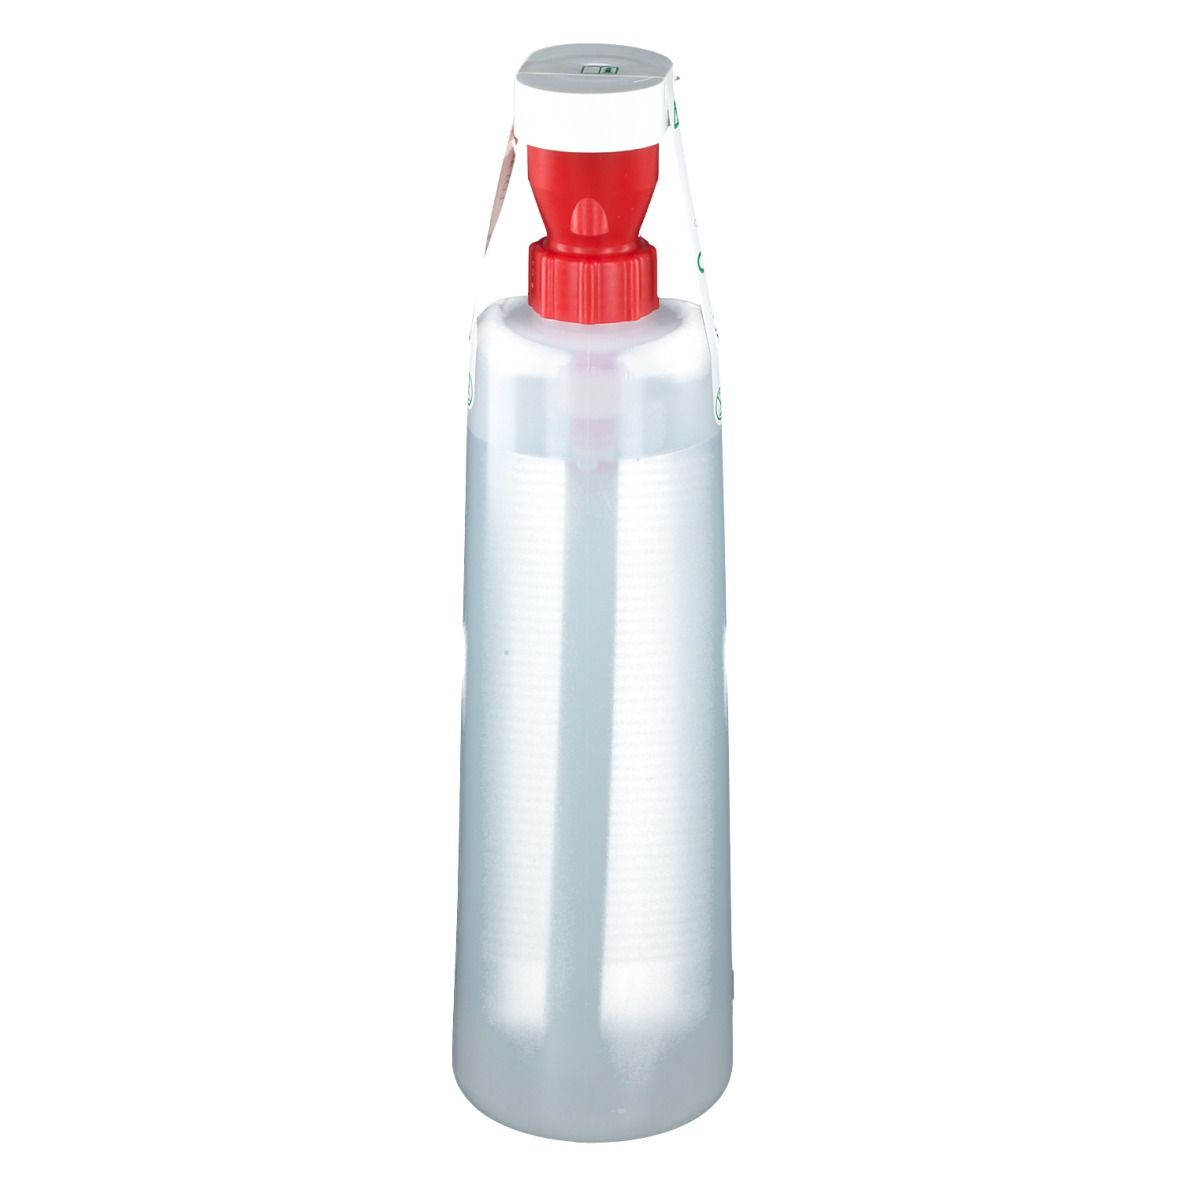 BARIKOS Augenspülflaschen-Set: 2 Augenspülflasche à 620 ml inkl